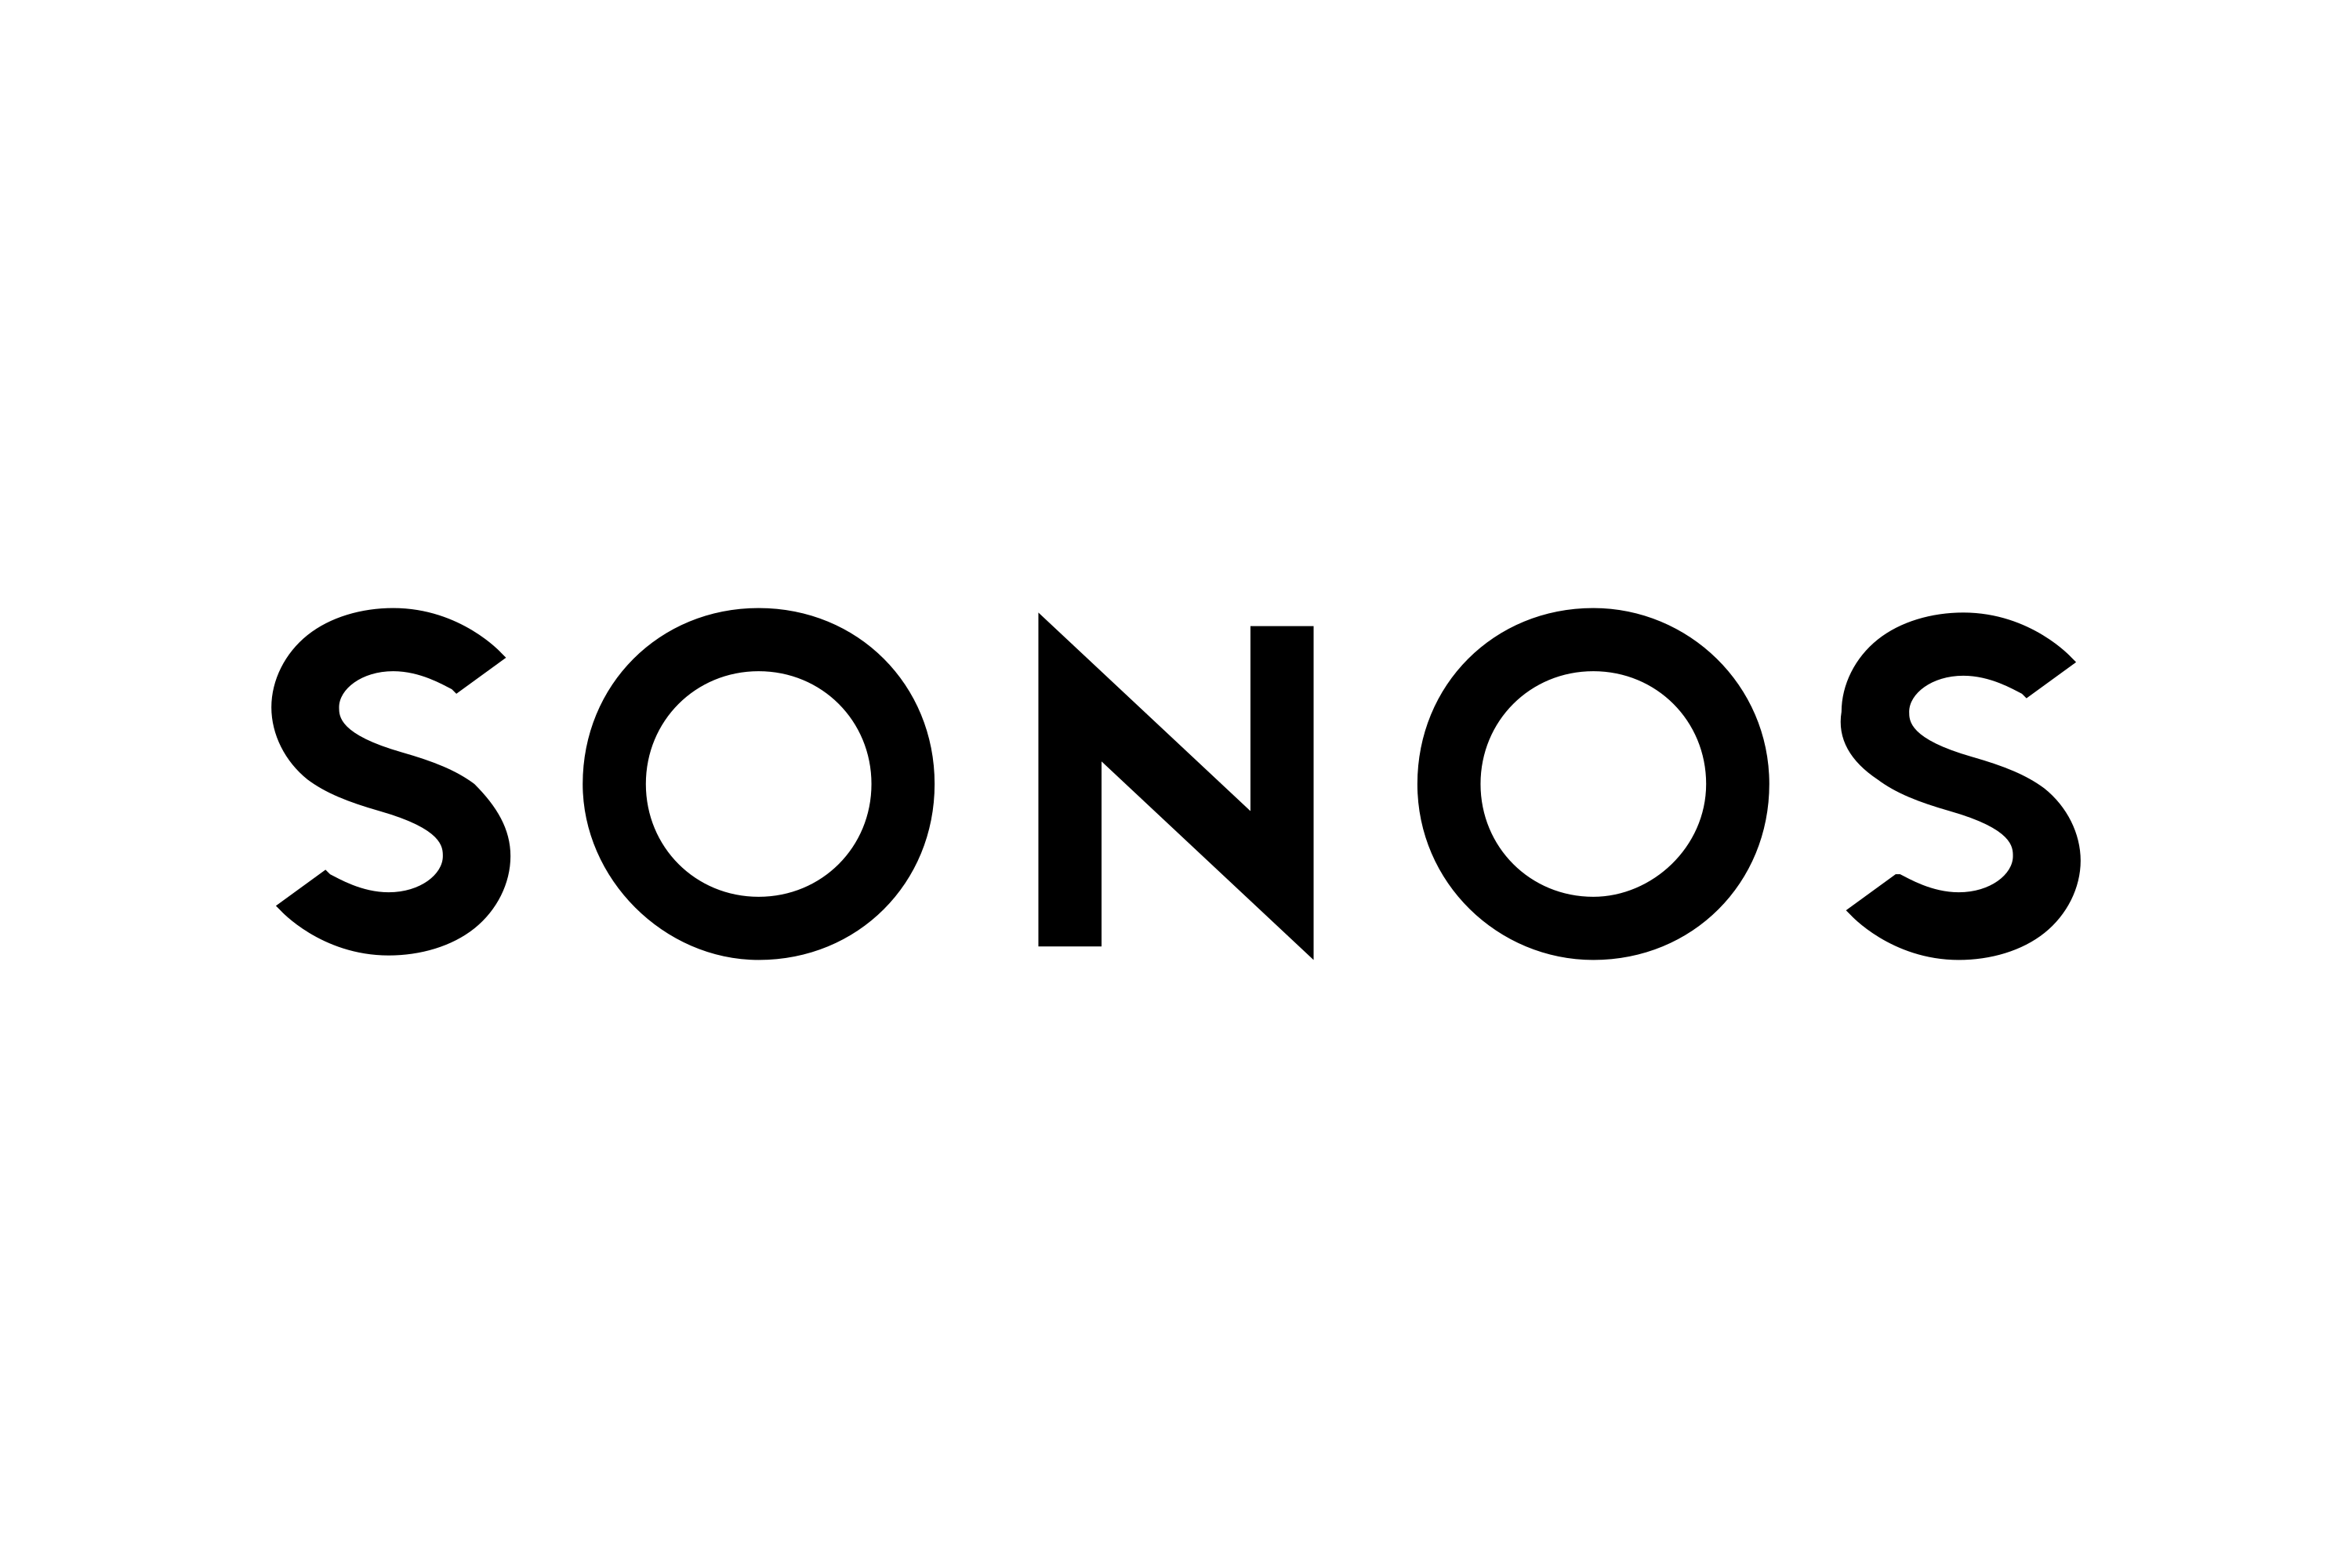 Sonos Inc